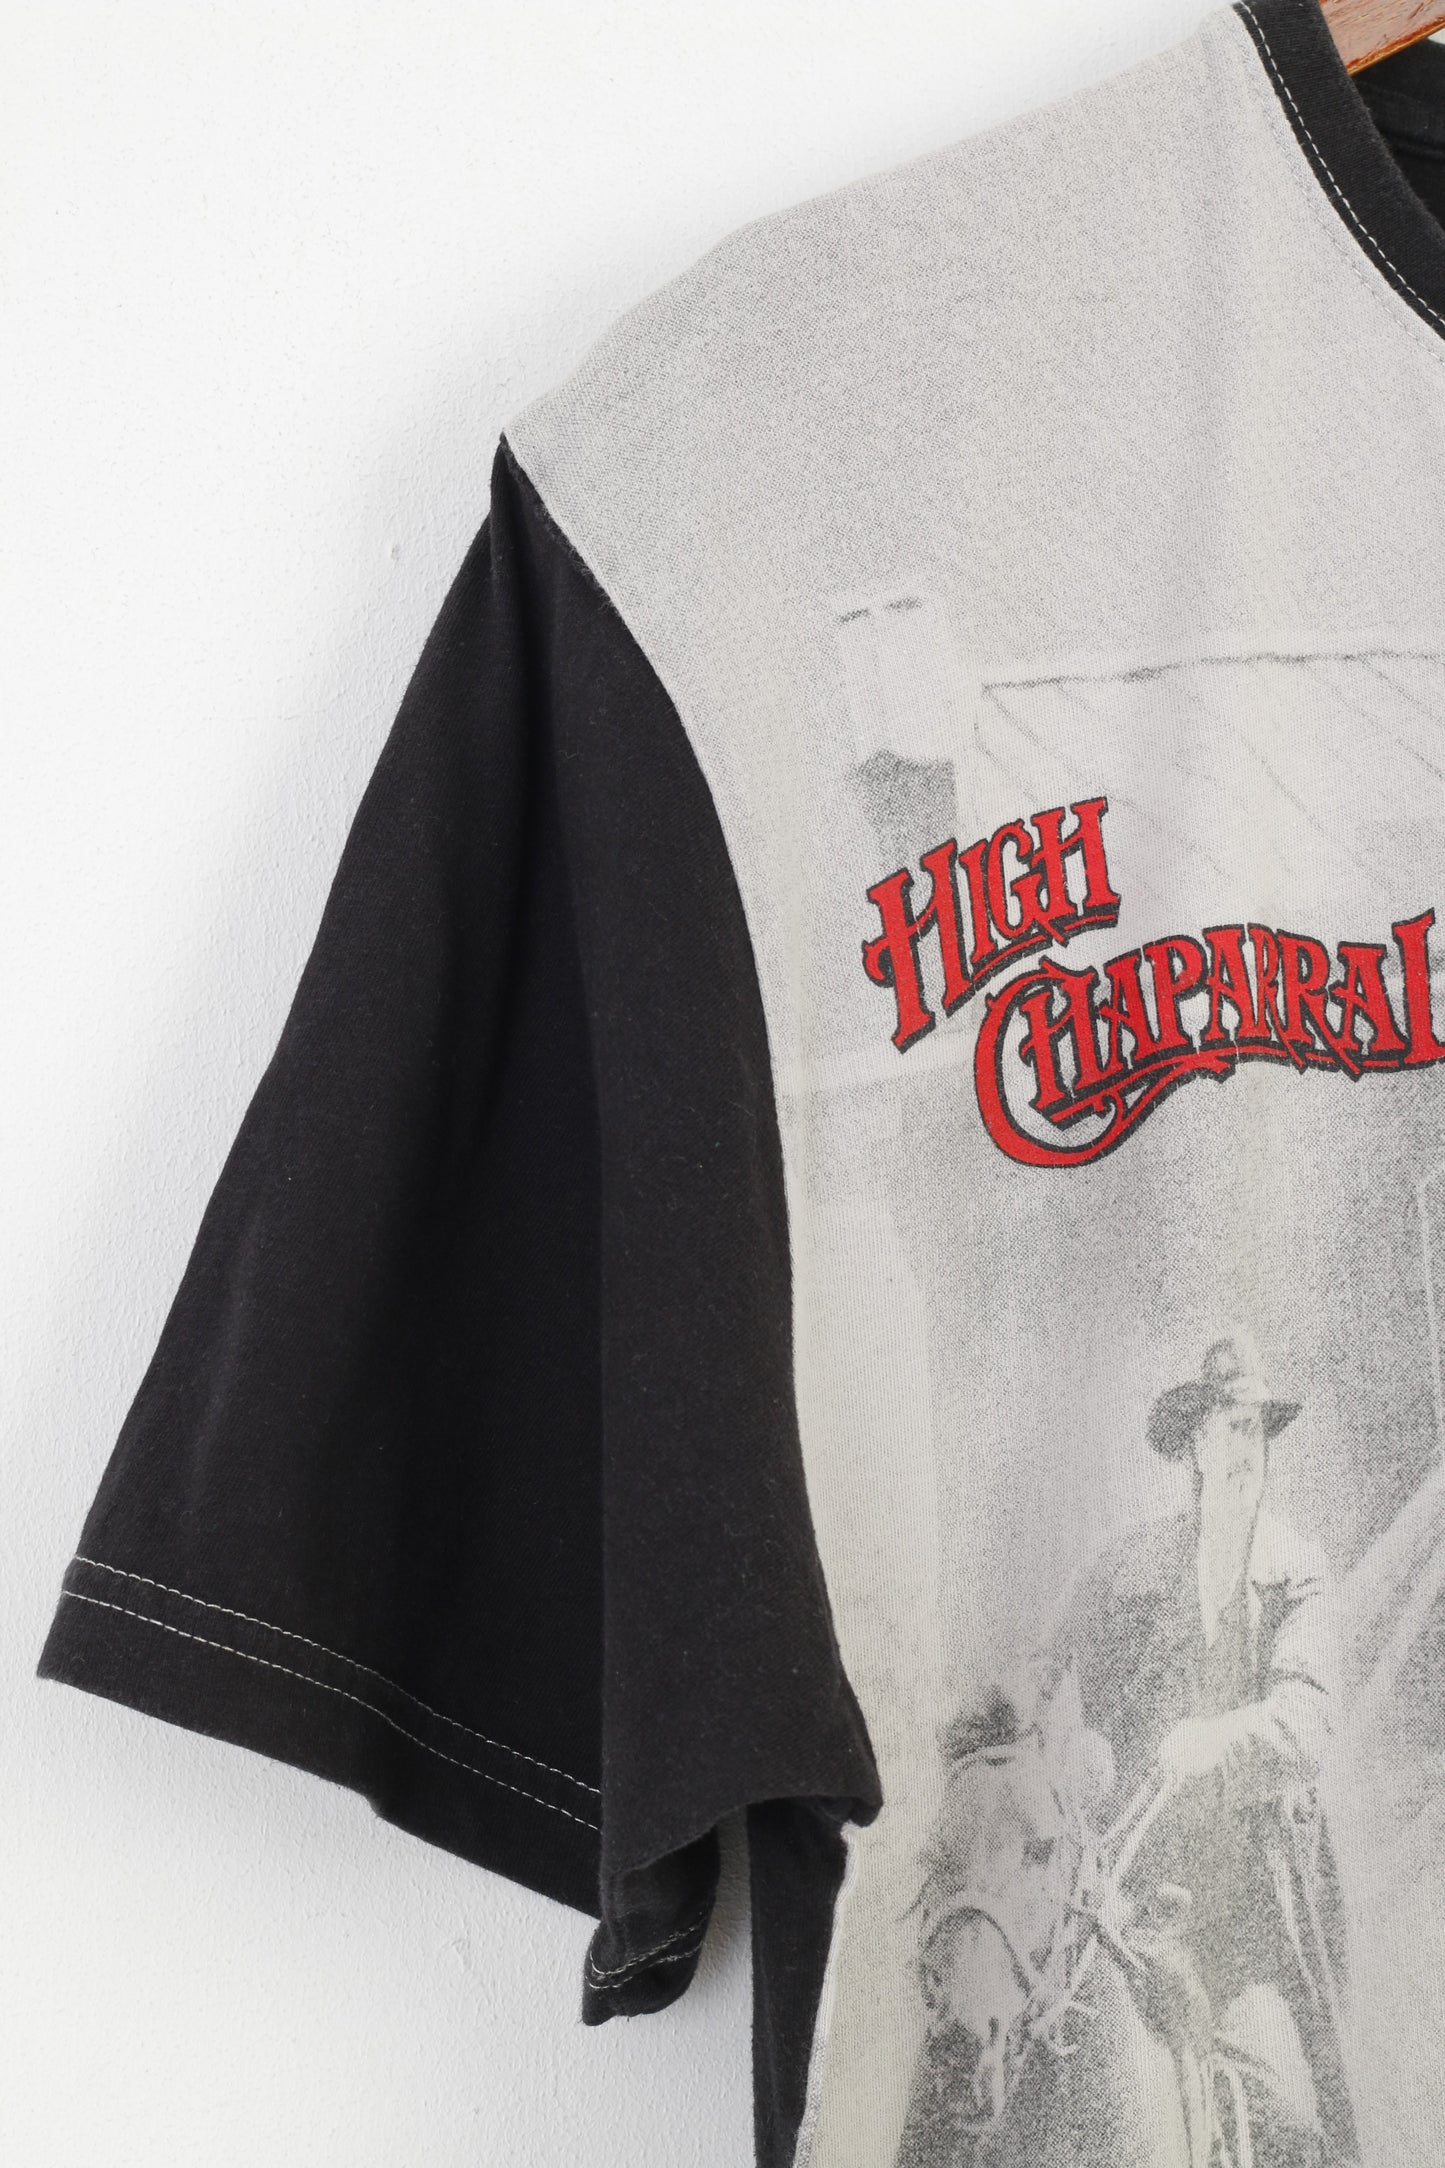 Original Design Men XL T-Shirt Graphic High Chaparral Cotton Ola Nesje Ab  Sweden Crew Neck  Black Top